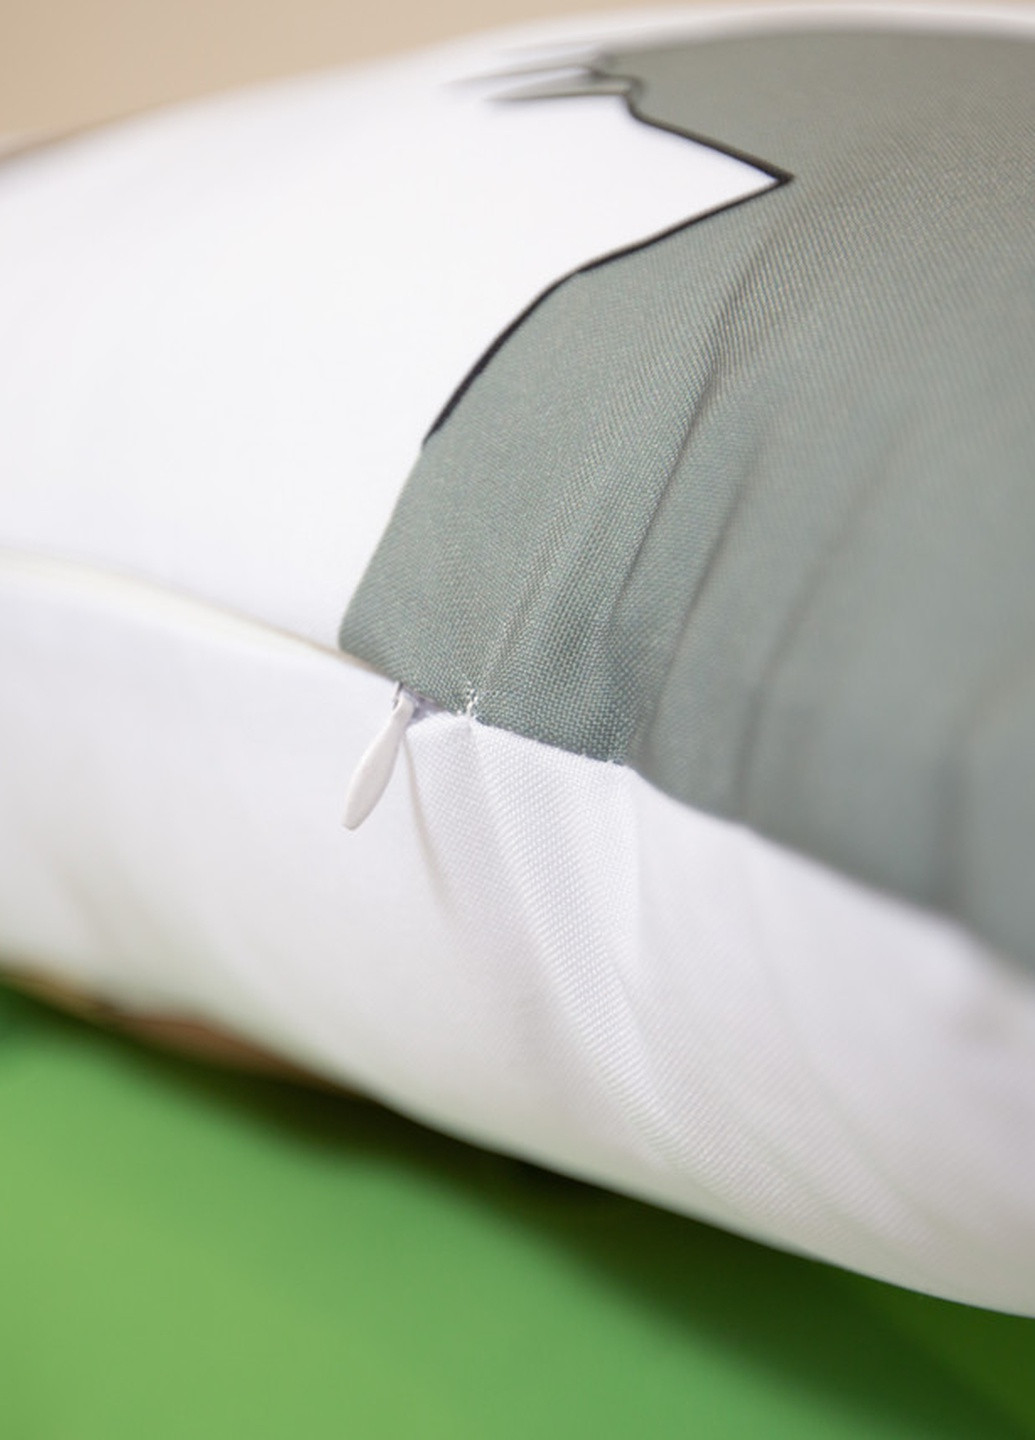 Подушка дакимакура Харли Квинн Отряд Самоубийц декоративная ростовая подушка для обнимания 50*170 No Brand (258992510)